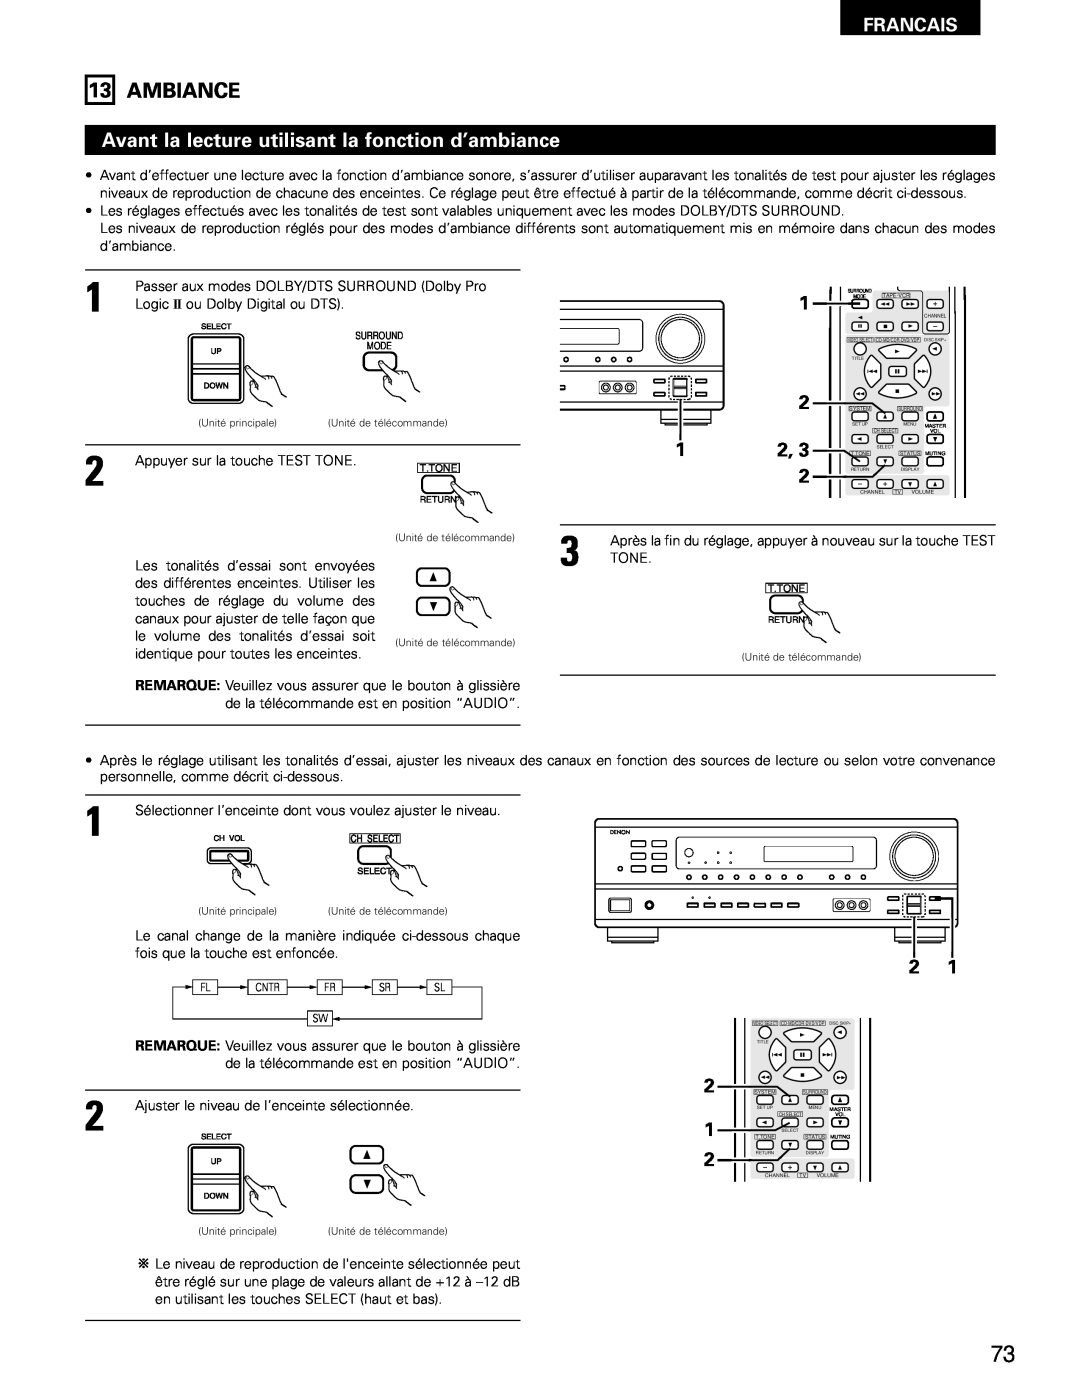 Denon AVR-682, AVR-1602 manual Ambiance, Avant la lecture utilisant la fonction d’ambiance, Francais 